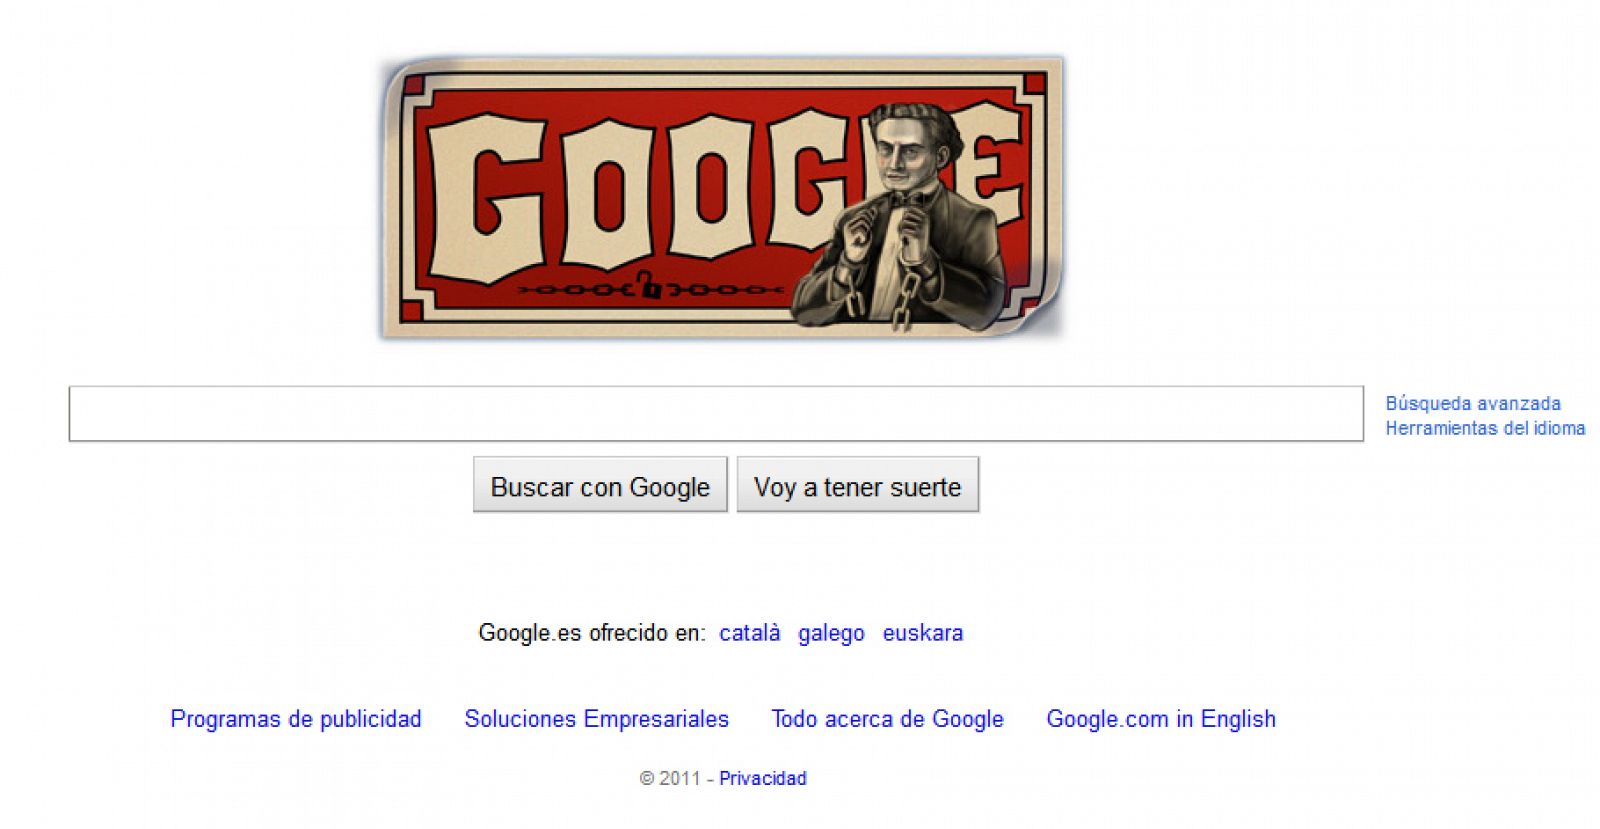 Uno de los pocos trucos que se le resiste a Houdini, el 'doodle' de Google, del que no puede escapar